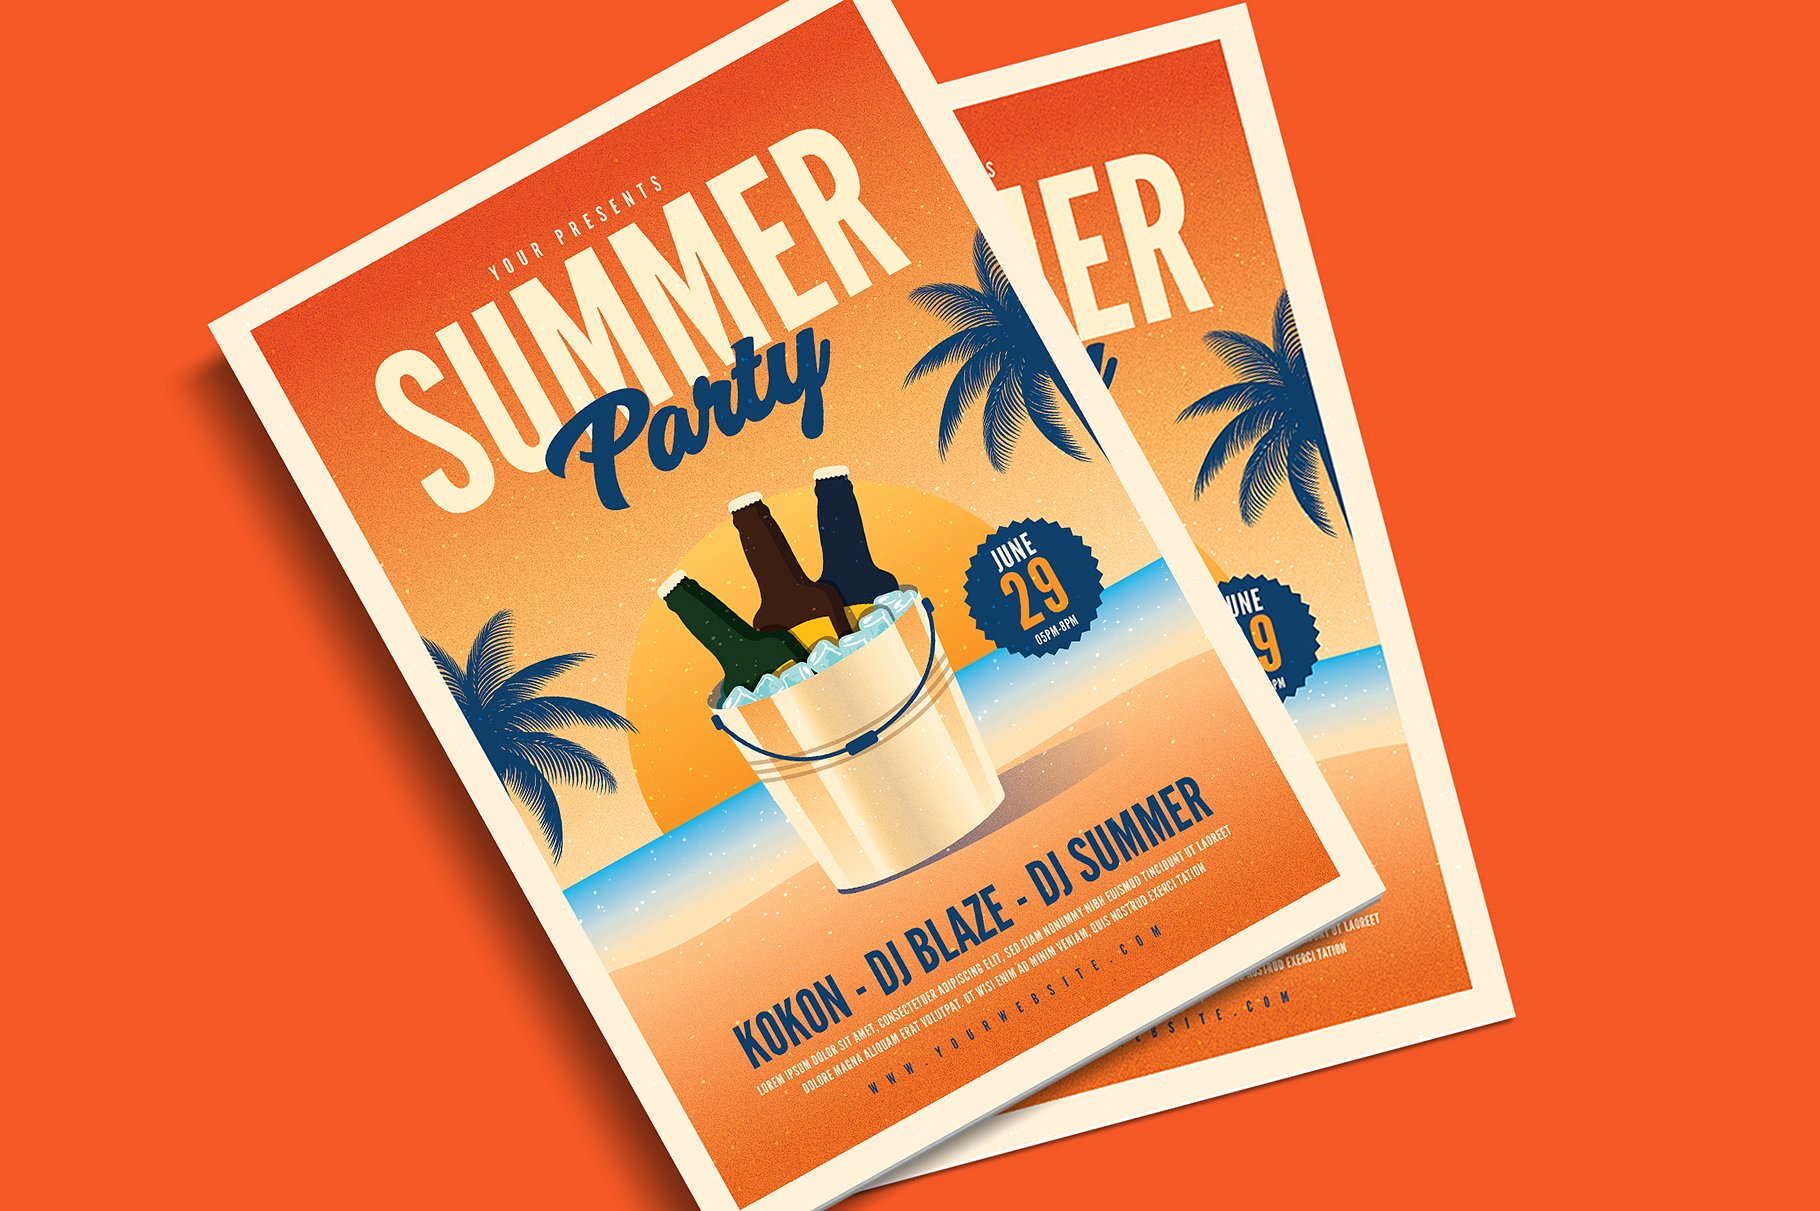 夏日啤酒主题派对活动海报模板 Summer Beer Par